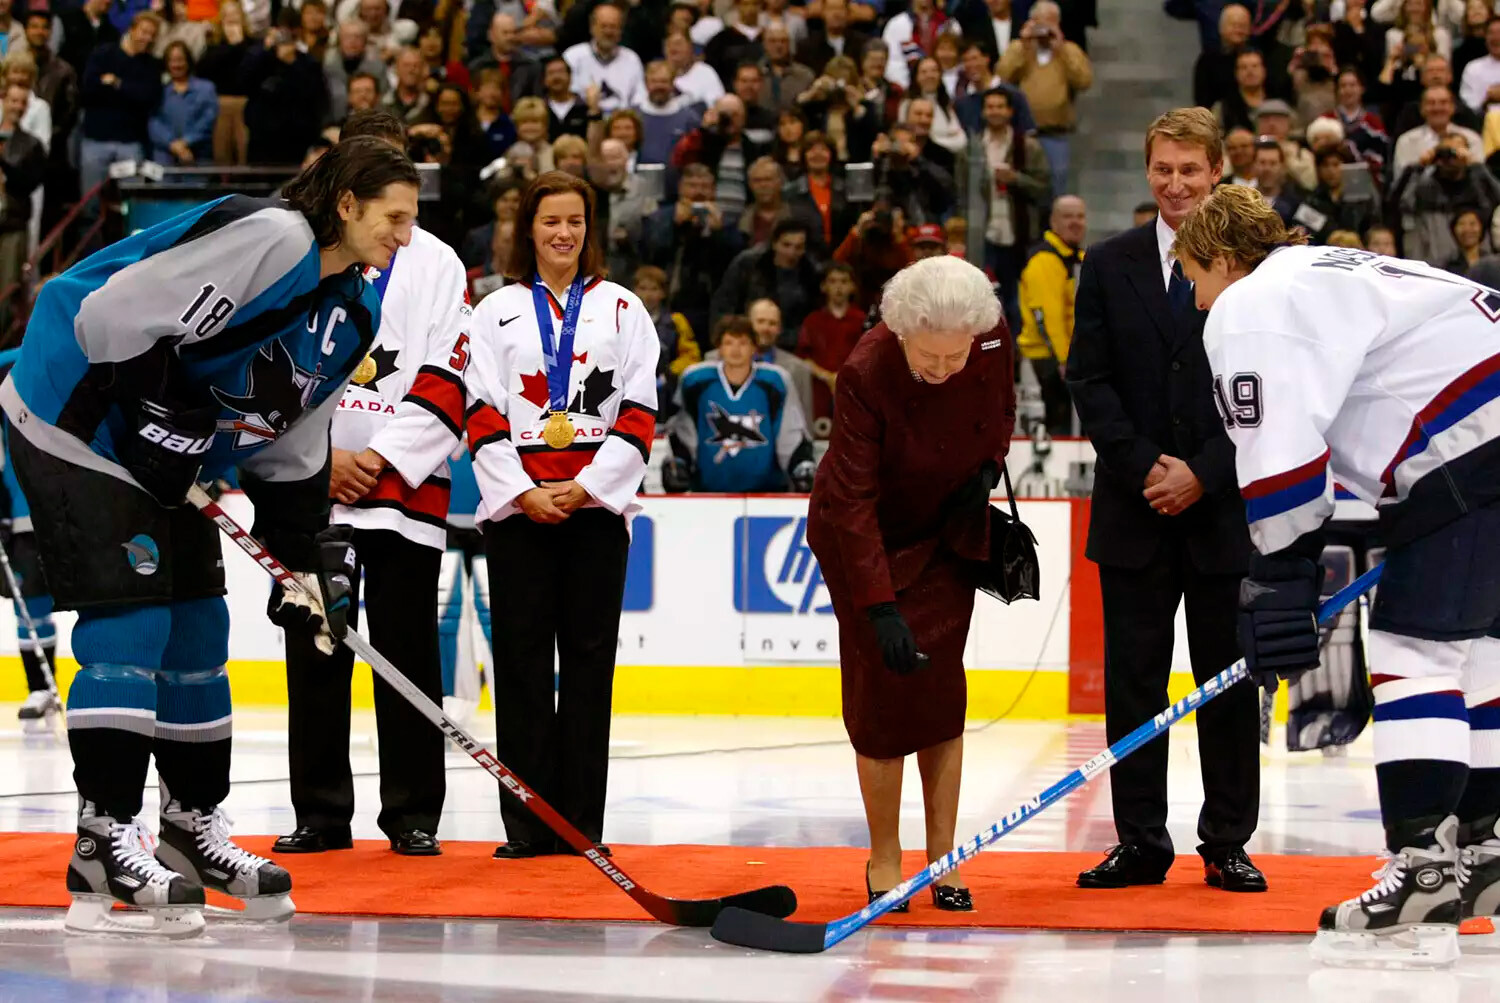 Королева Елизавета II получает церемониальную шайбу, подаренную ей бывшим &laquo;Эдмонтон Ойлерз&raquo; и генеральным менеджером мужской олимпийской хоккейной команды Уэйном Гретцки 6 октября 2002 года в Ванкувере, Канада